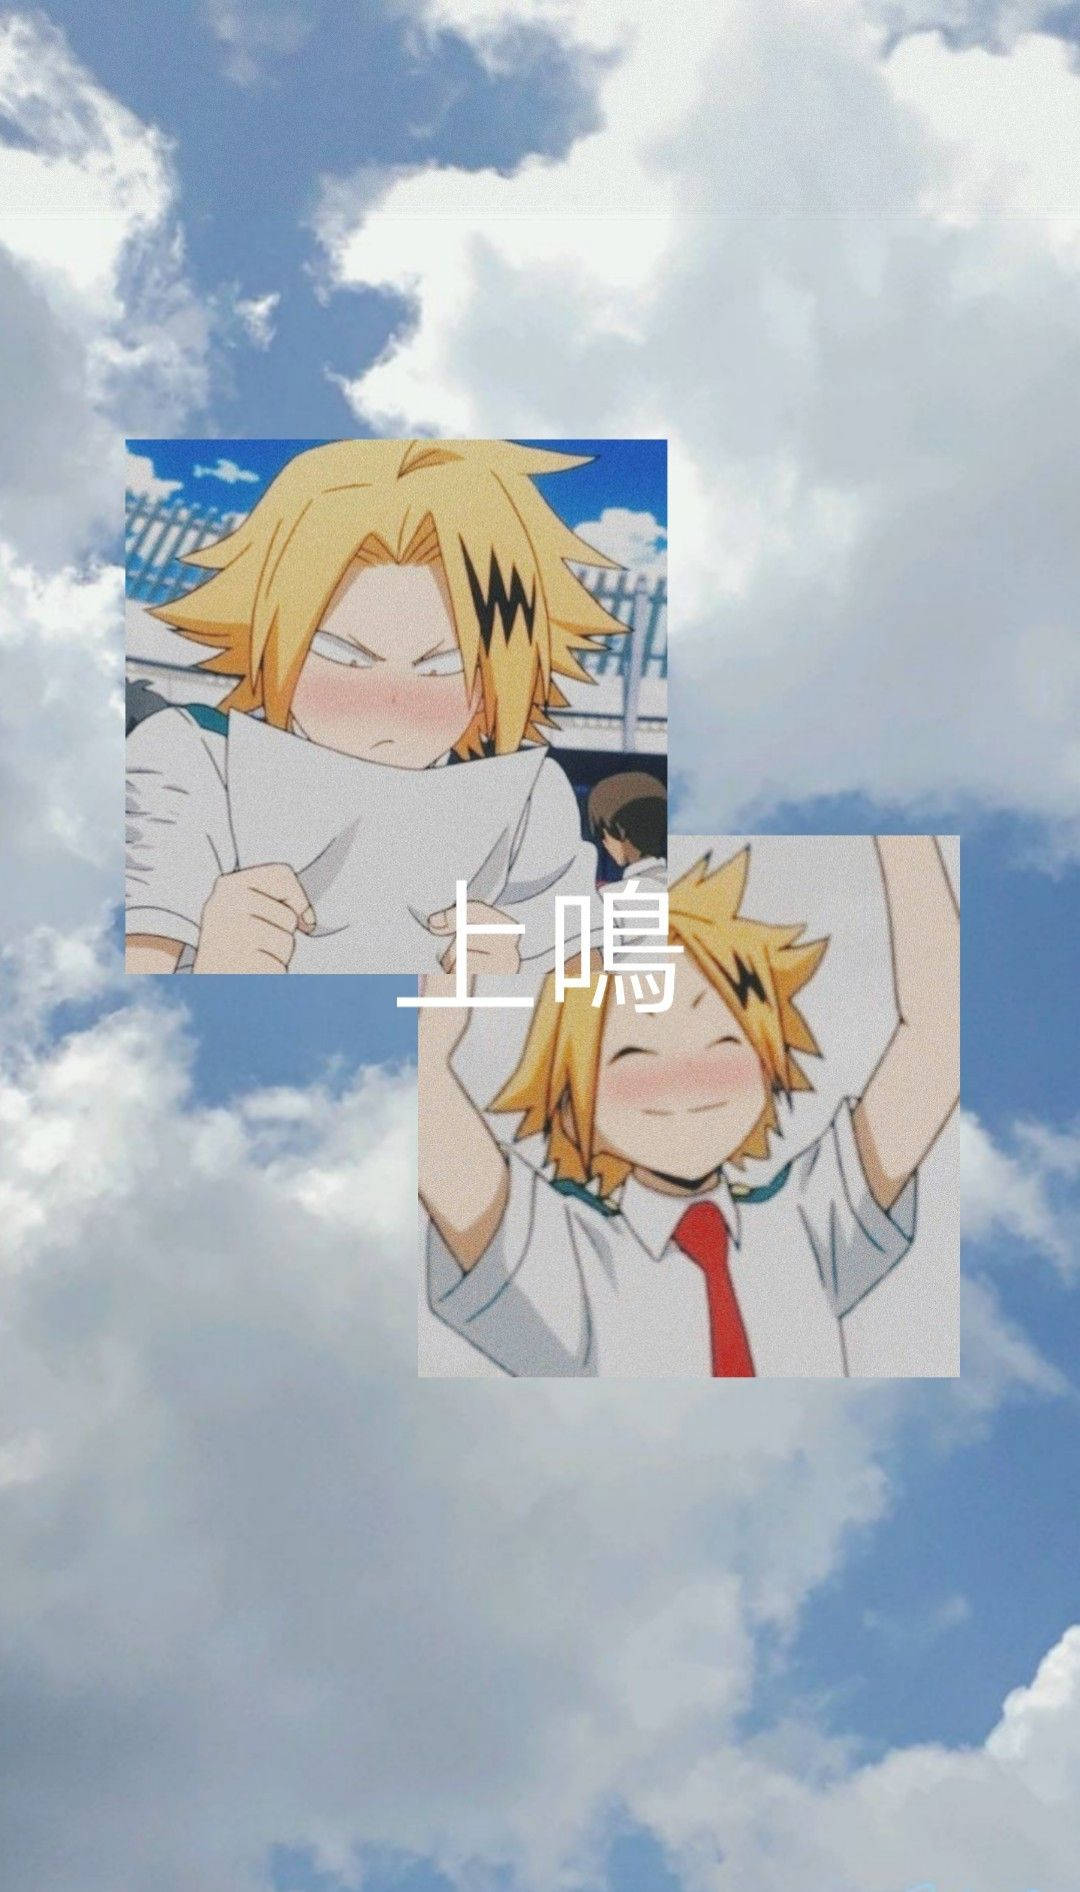 Dospersonajes De Anime Están En El Cielo Con Nubes. Fondo de pantalla